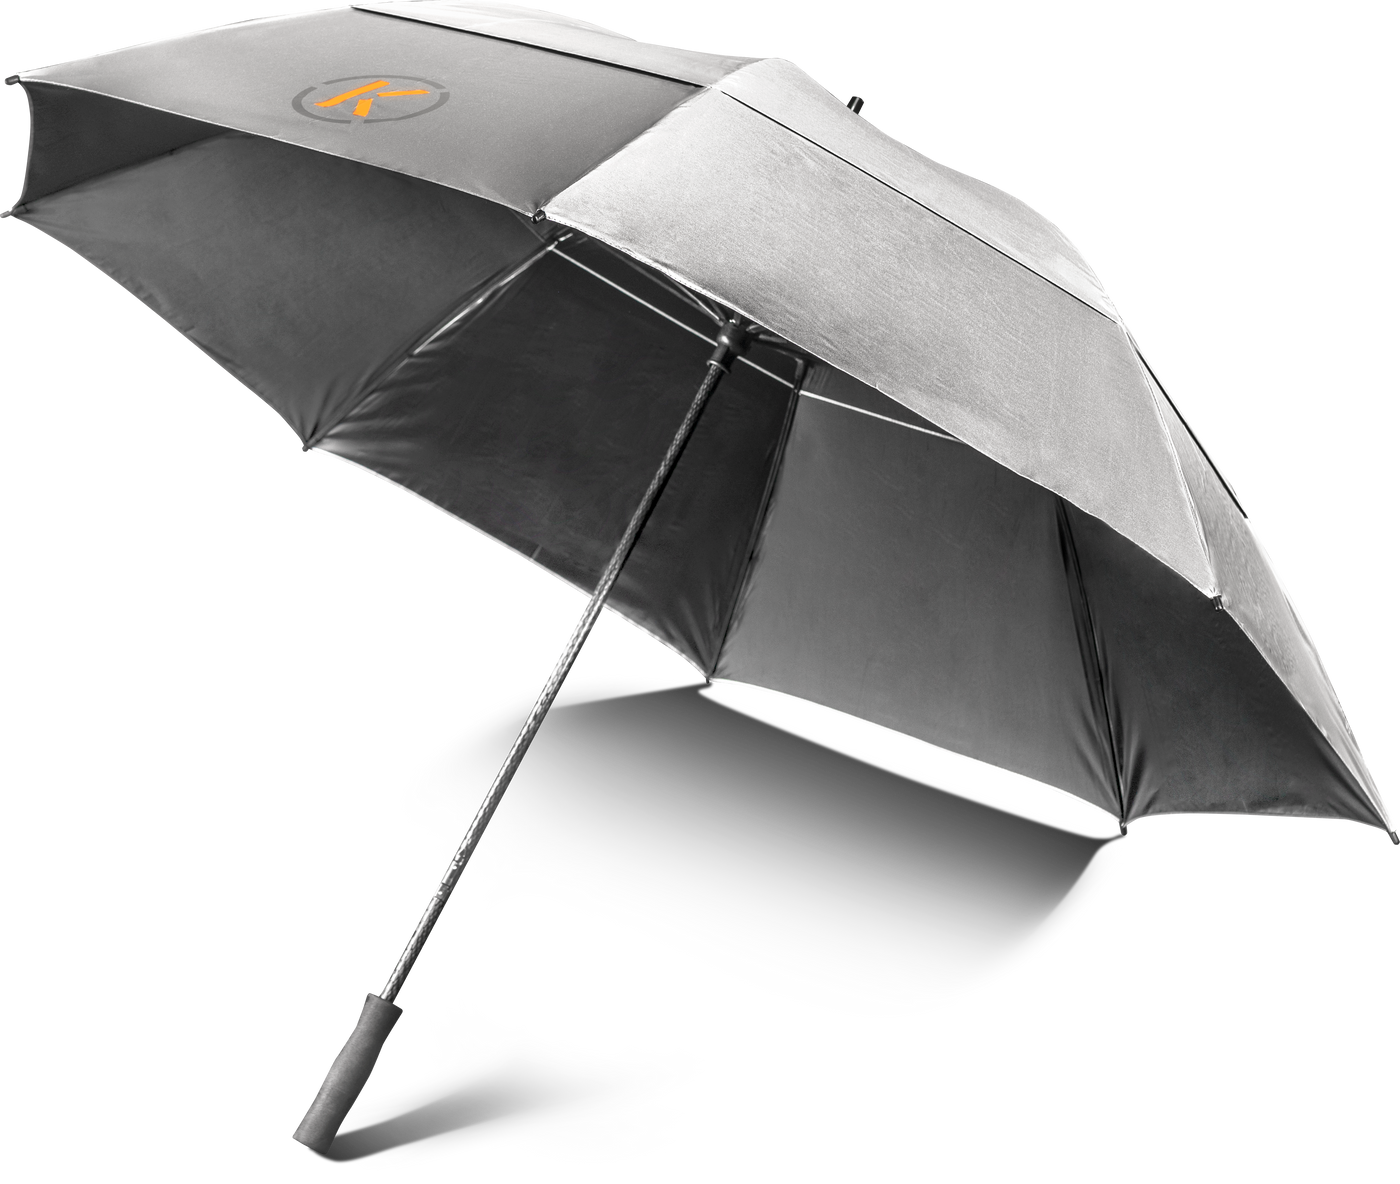 KIFFE GOLF golf umbrella "Solar Windbuster" 150 cm - made in Germany | KIFFE GOLF accessories